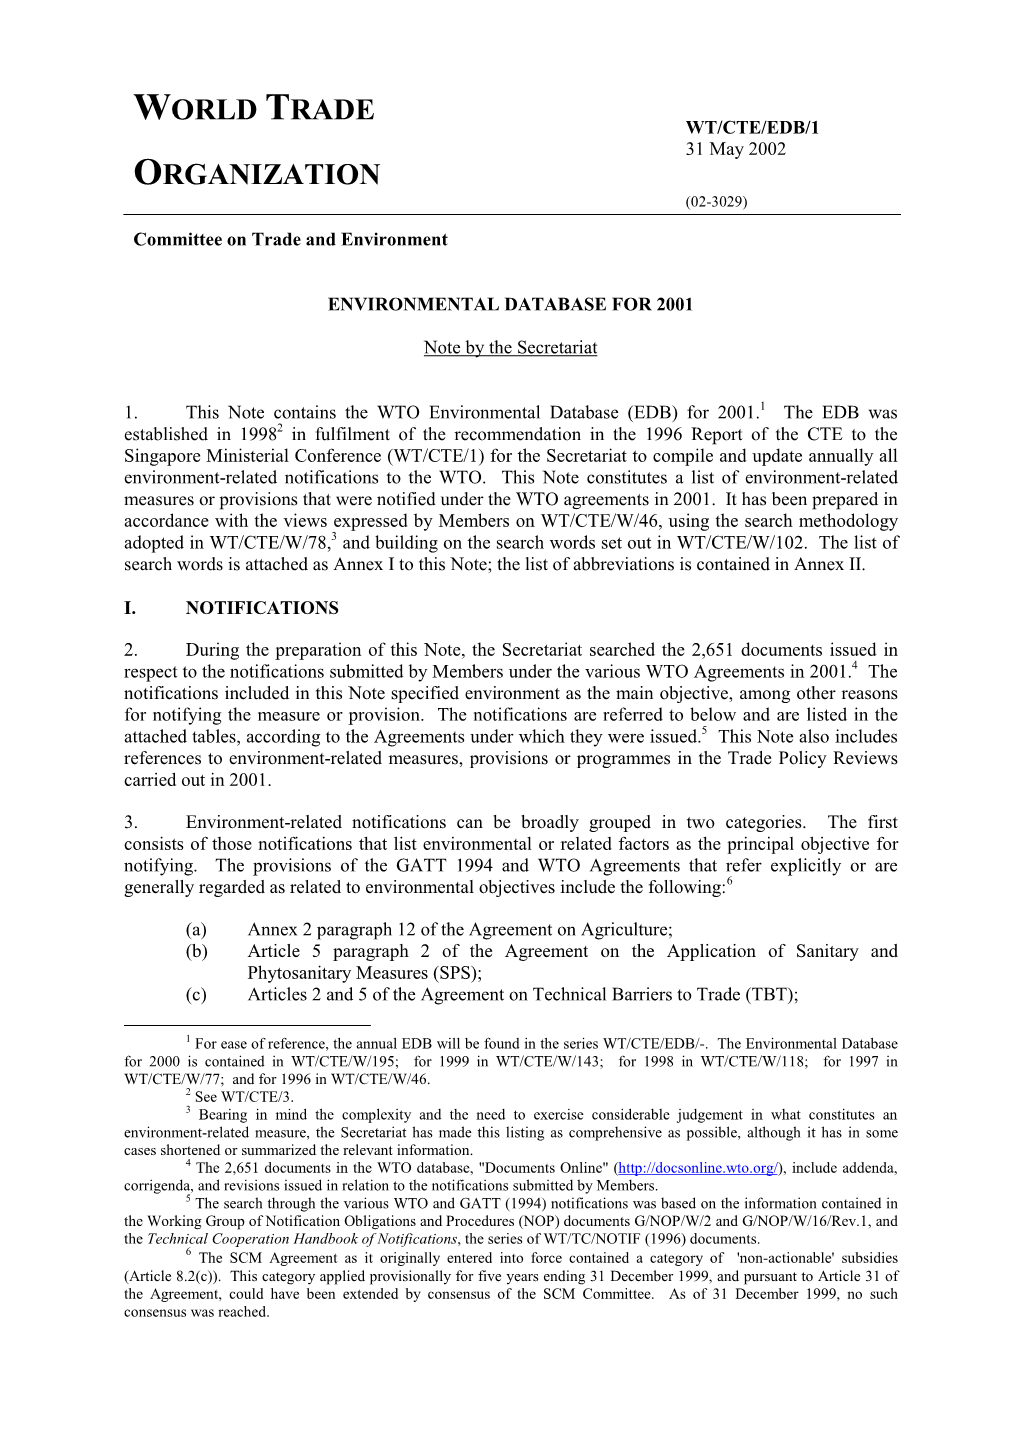 WT/CTE/EDB/1 31 May 2002 ORGANIZATION (02-3029)